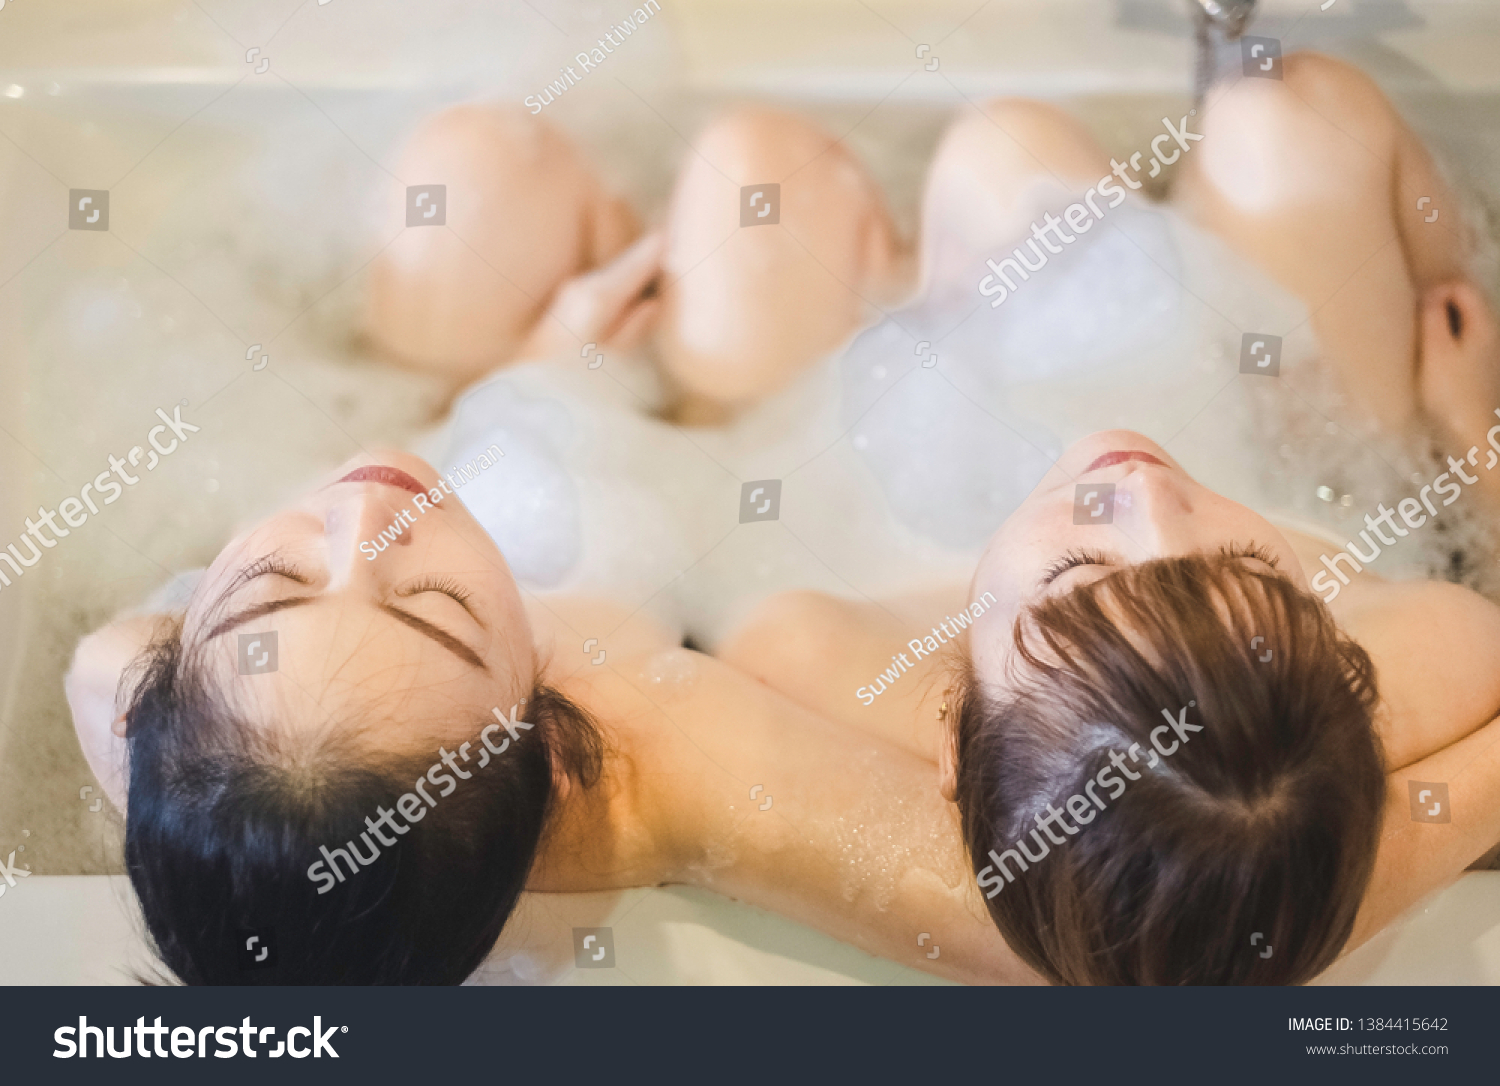 Lesbians Taking A Shower Together